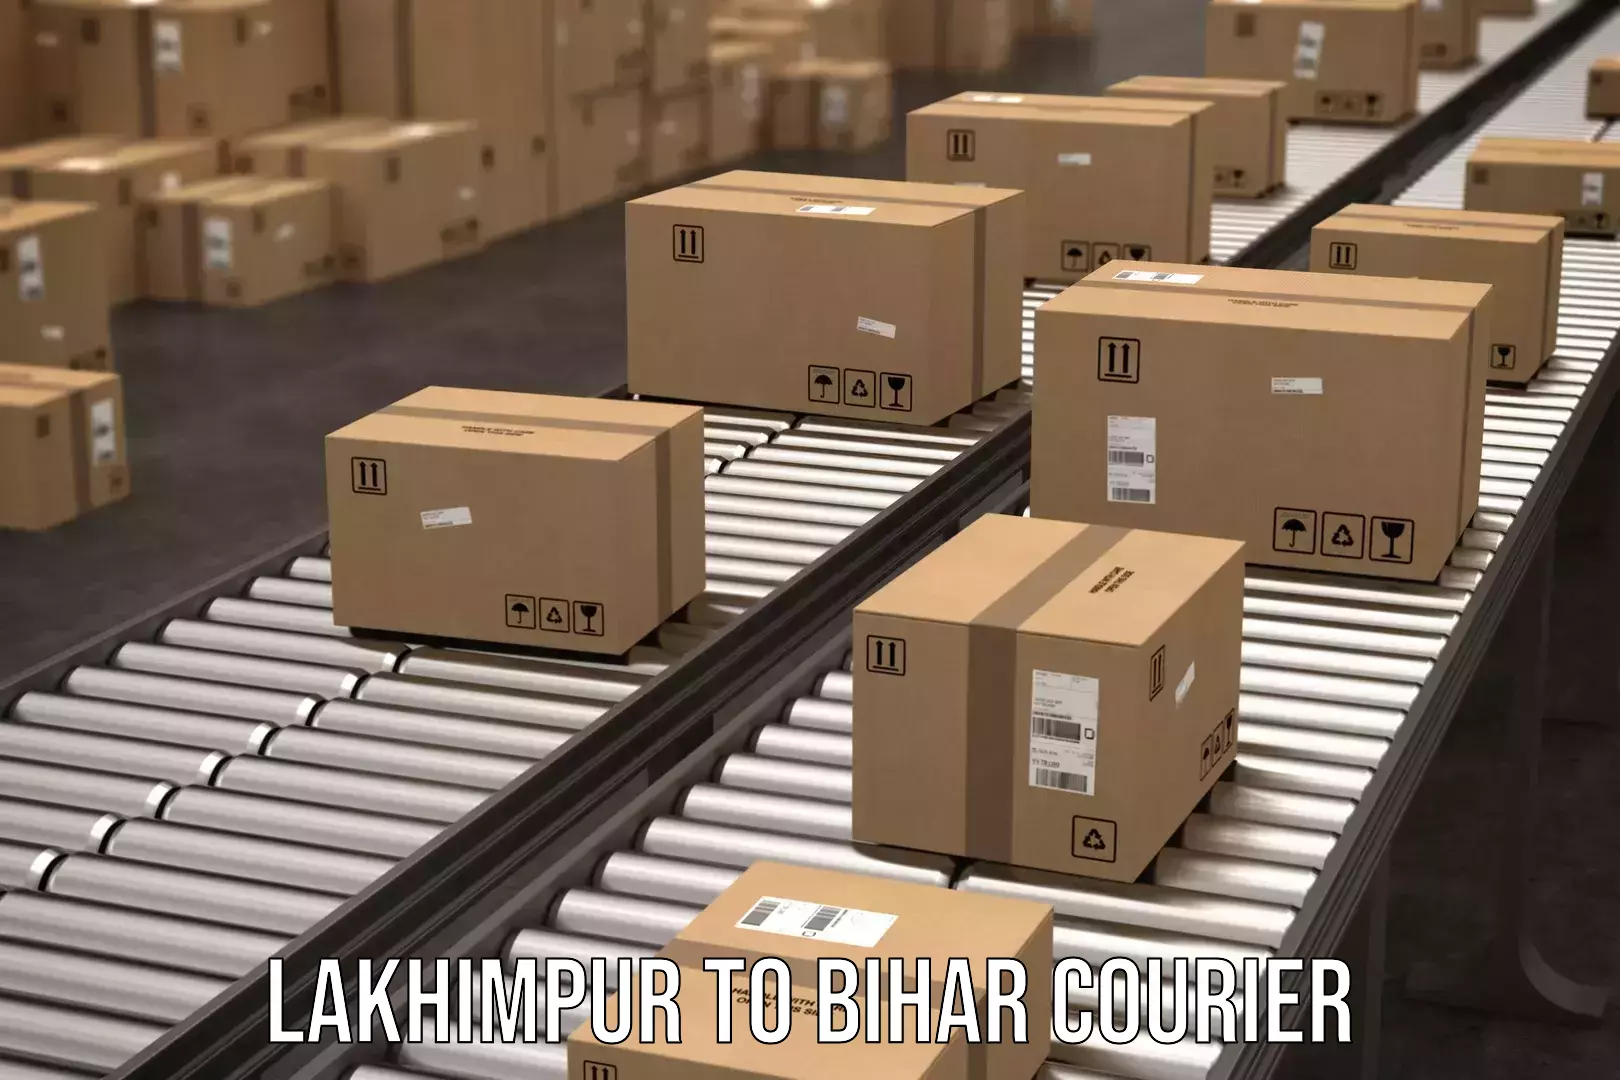 Courier service comparison Lakhimpur to Aurangabad Bihar